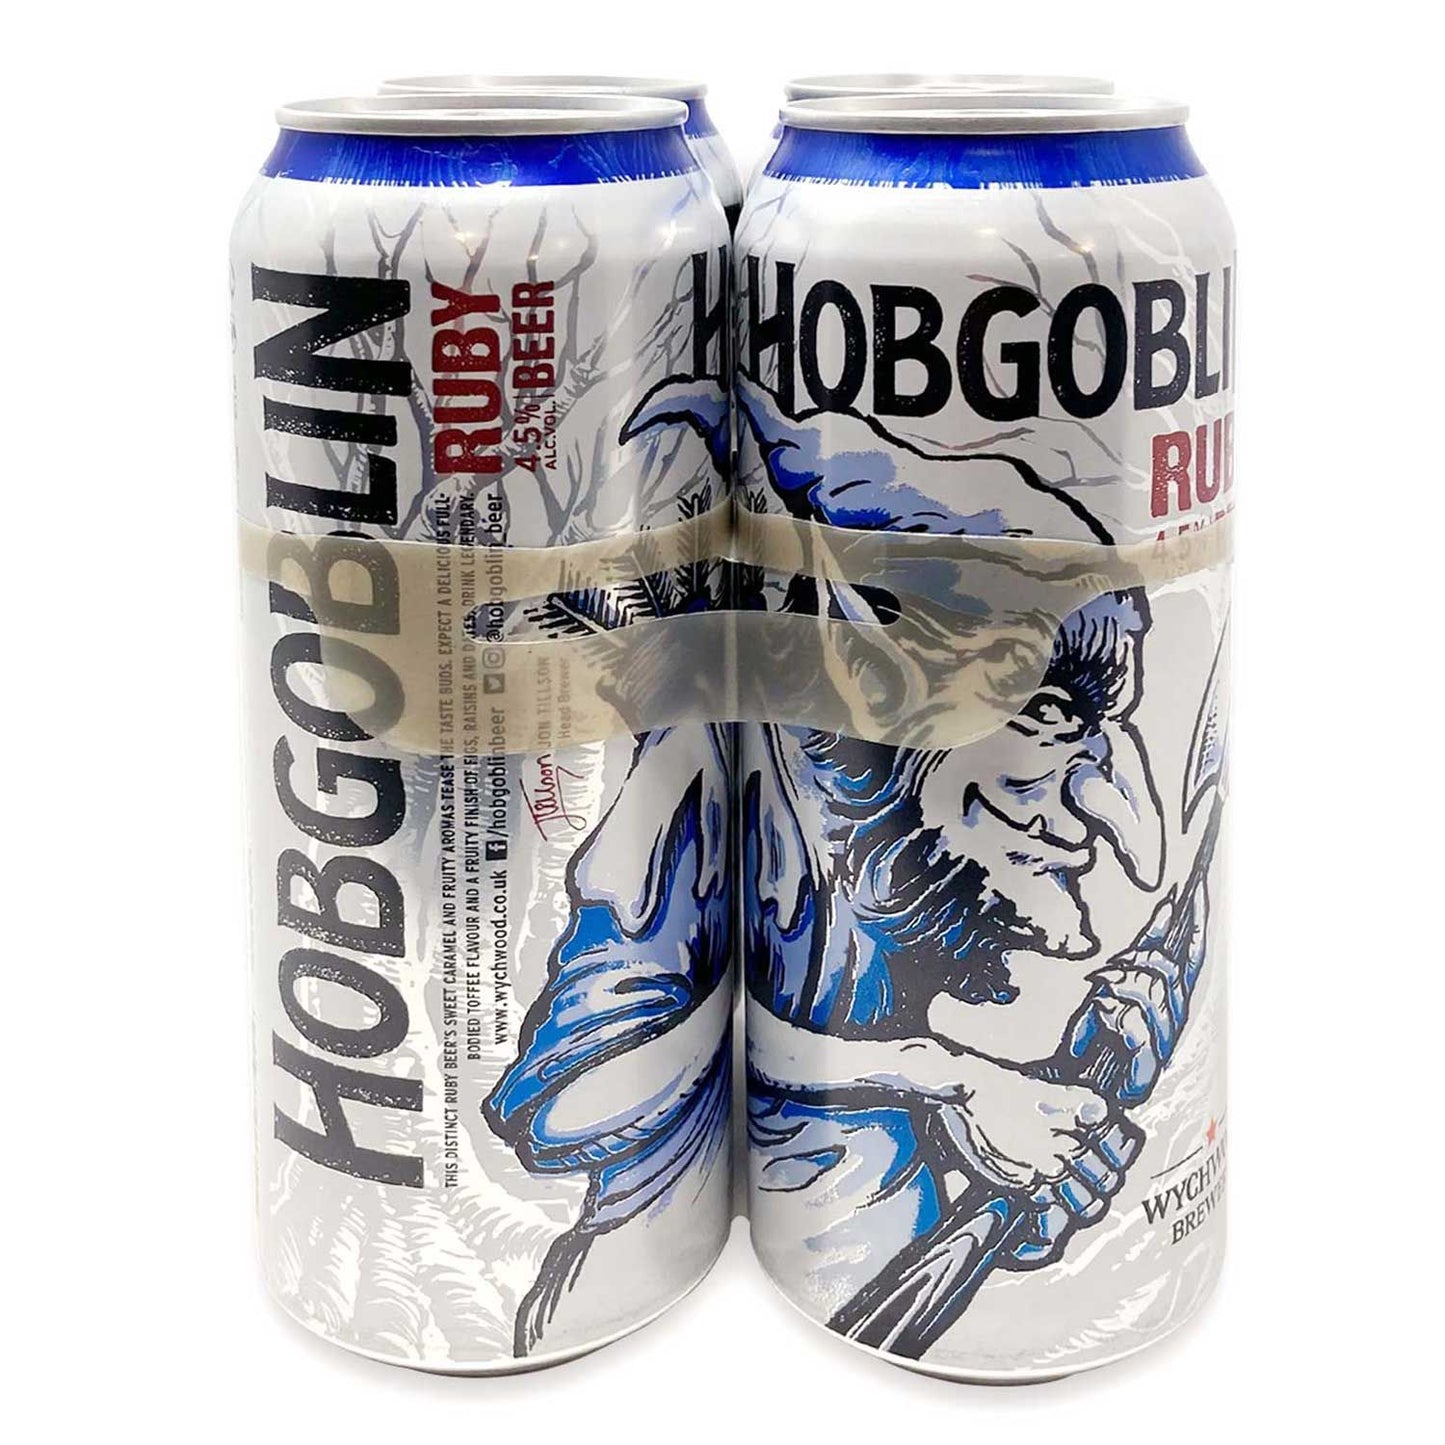 Wychwood Brewery Hobgoblin Ruby Ale Beer 4x500ml